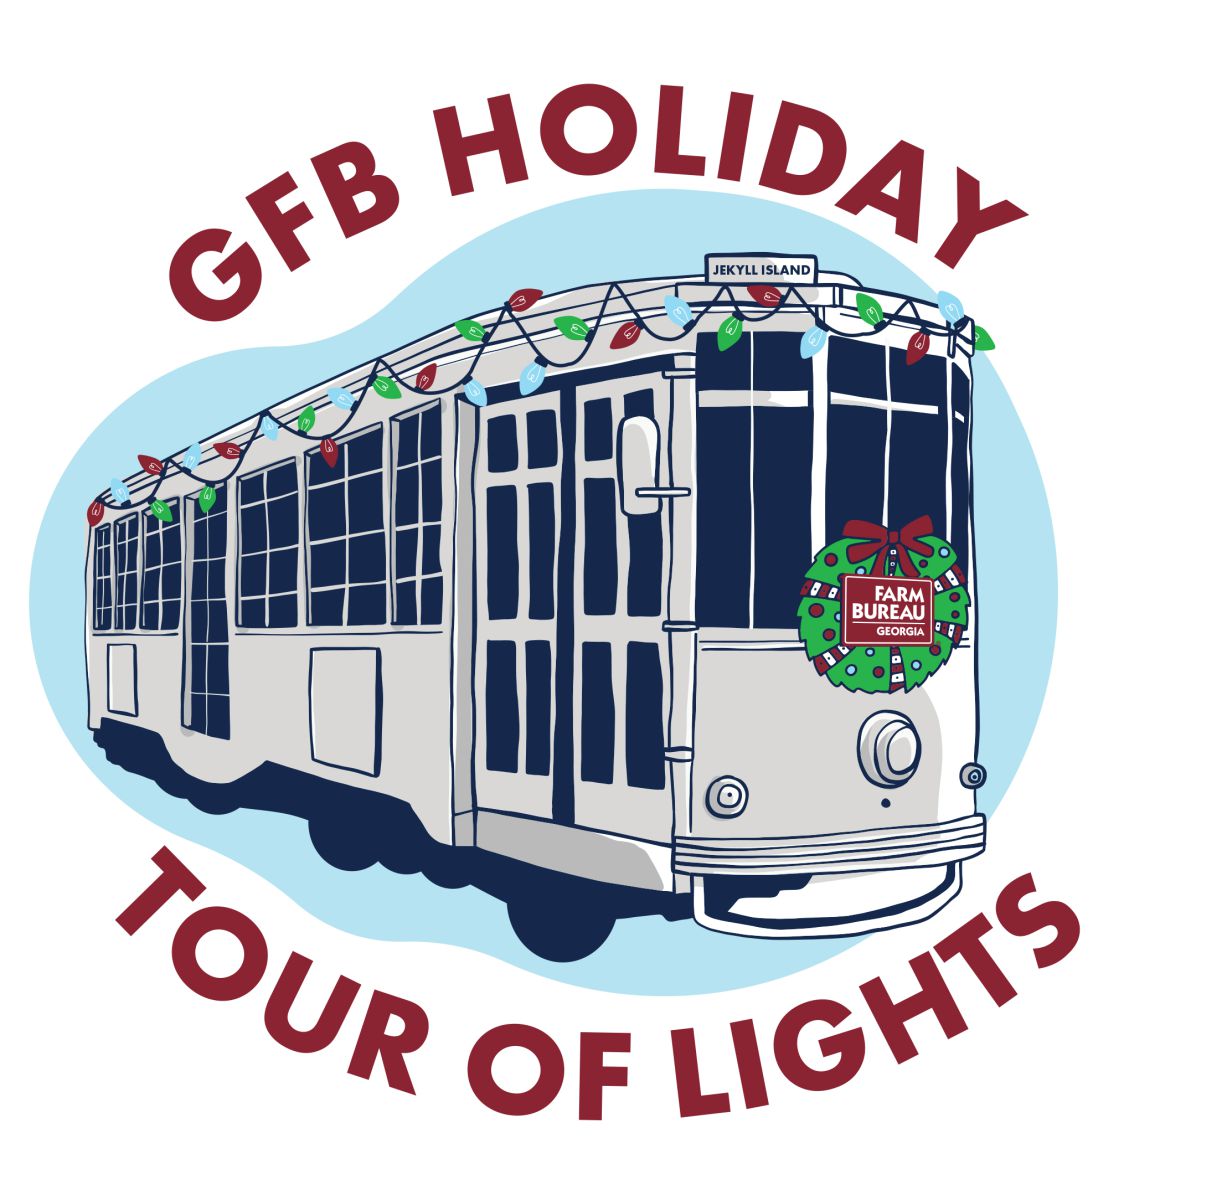 GFB Holiday Tour of Lights